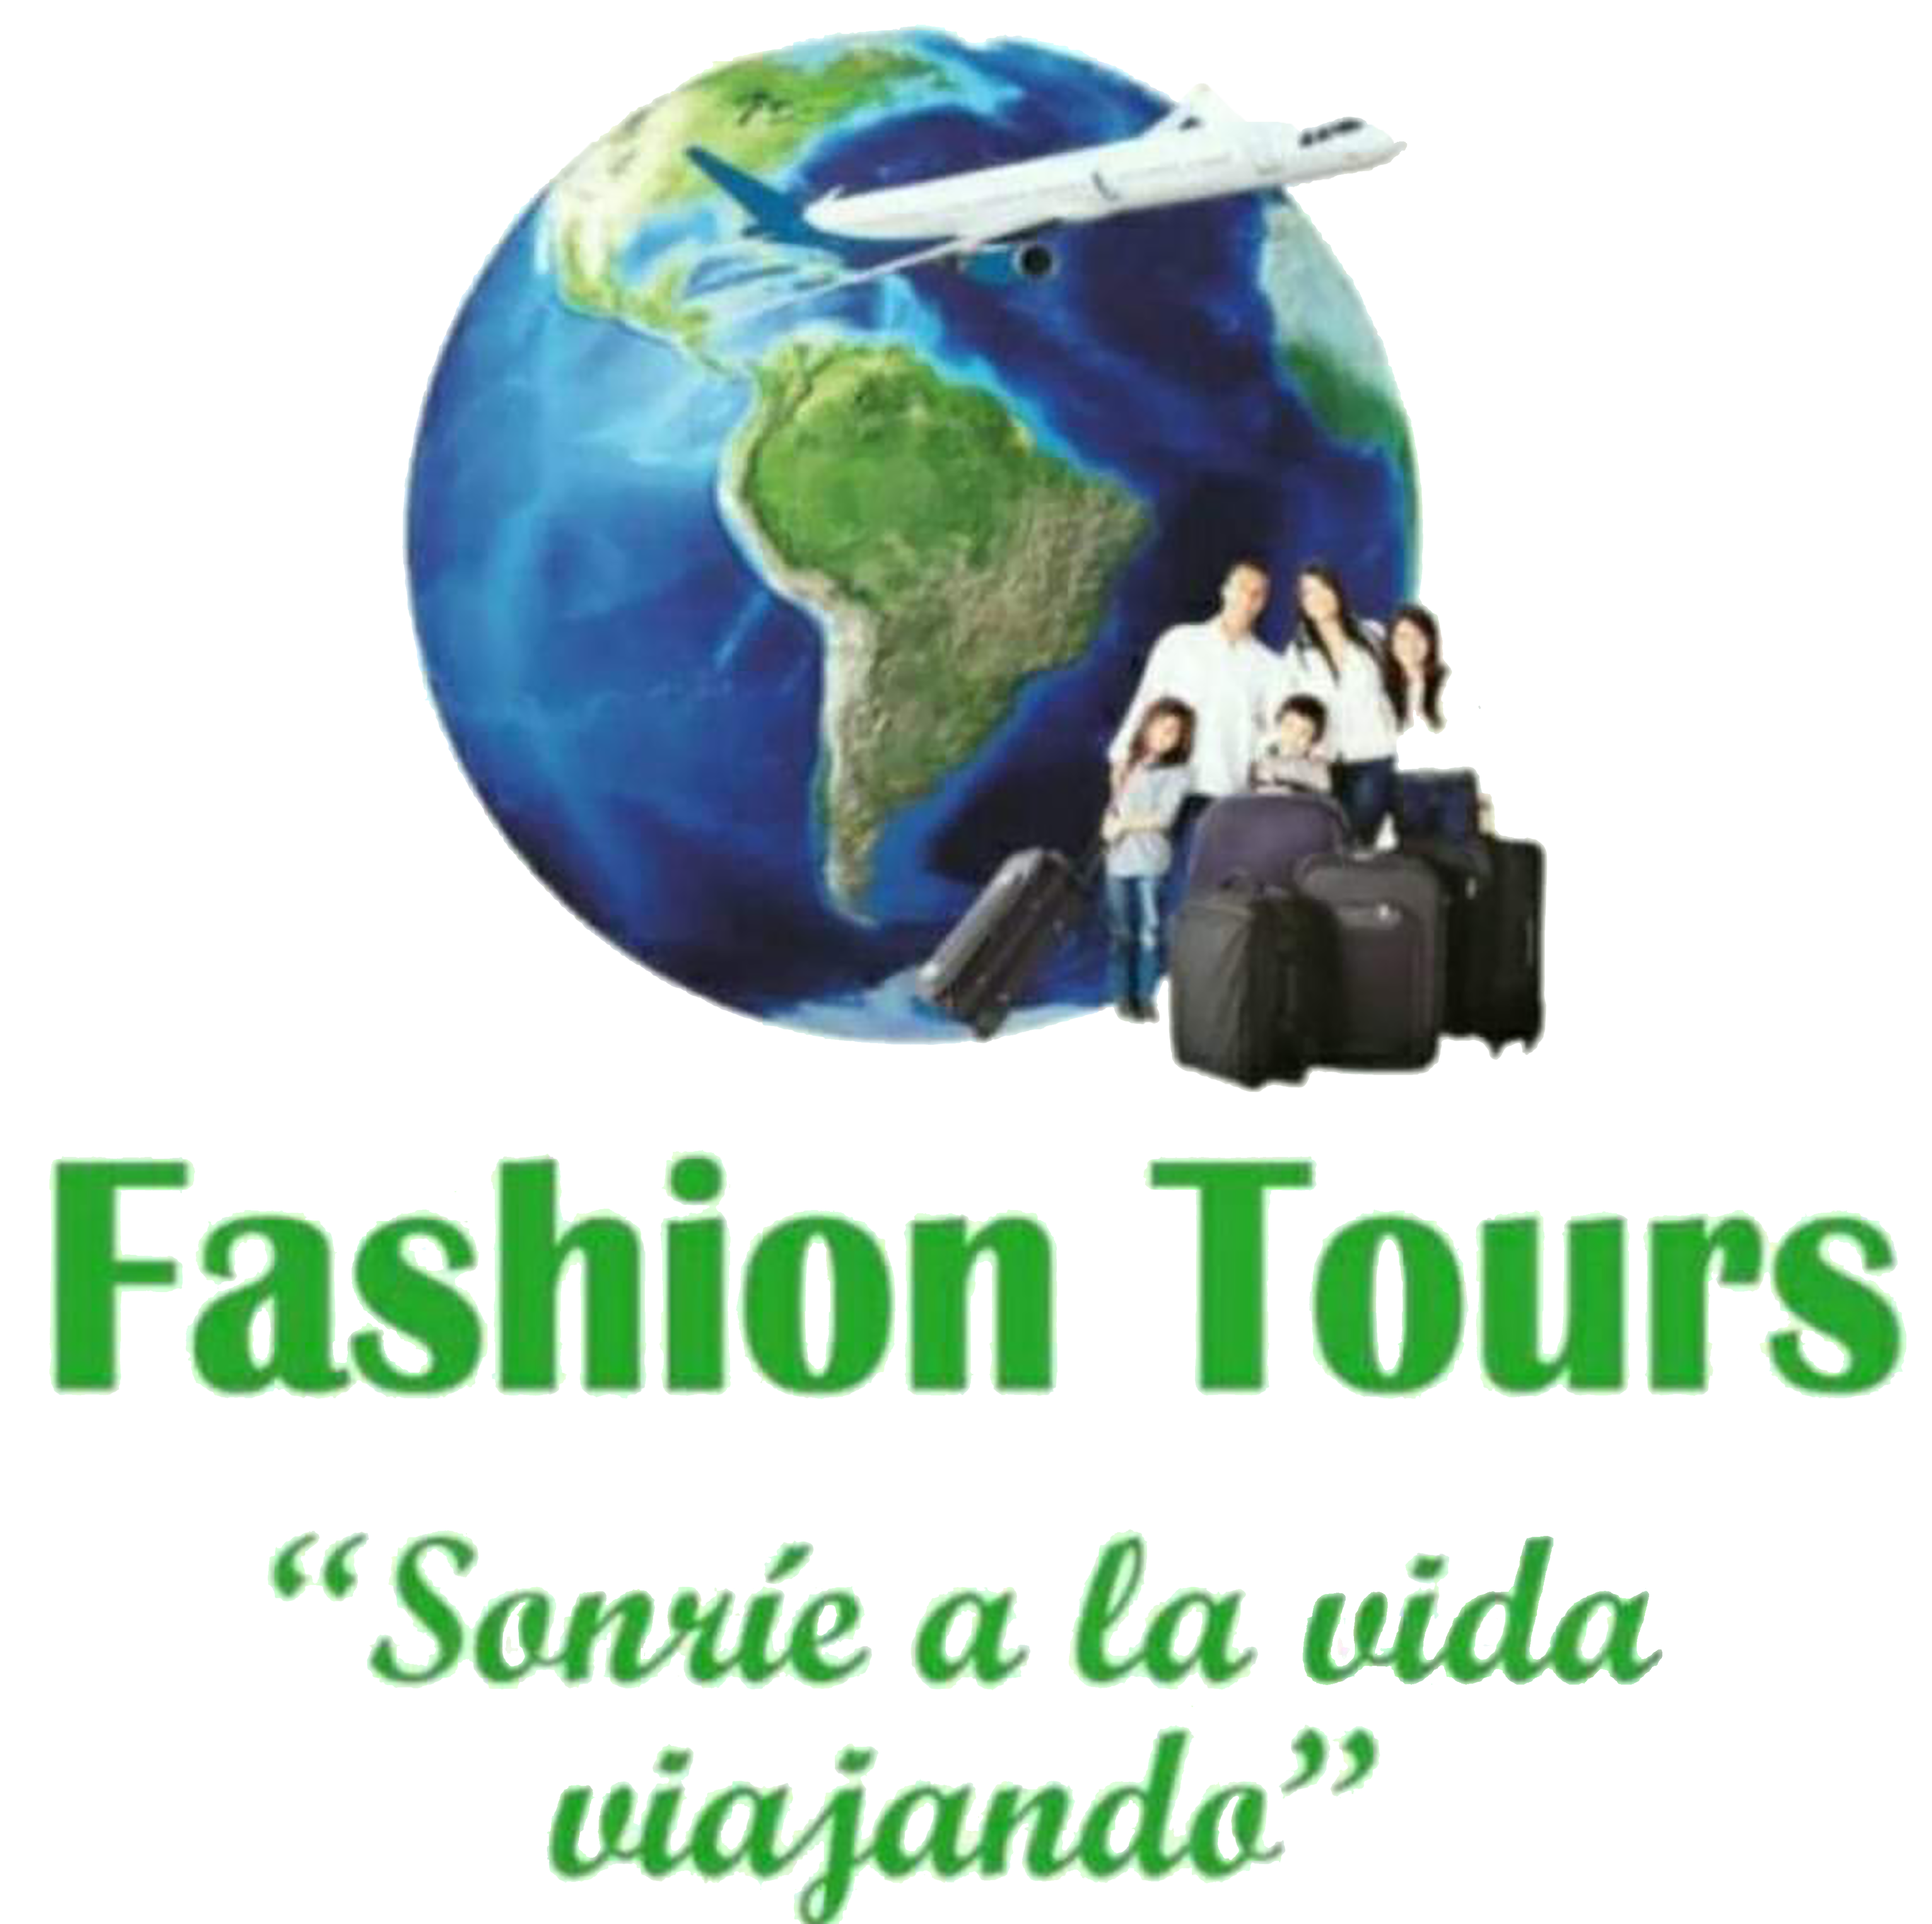 Fashion Tours